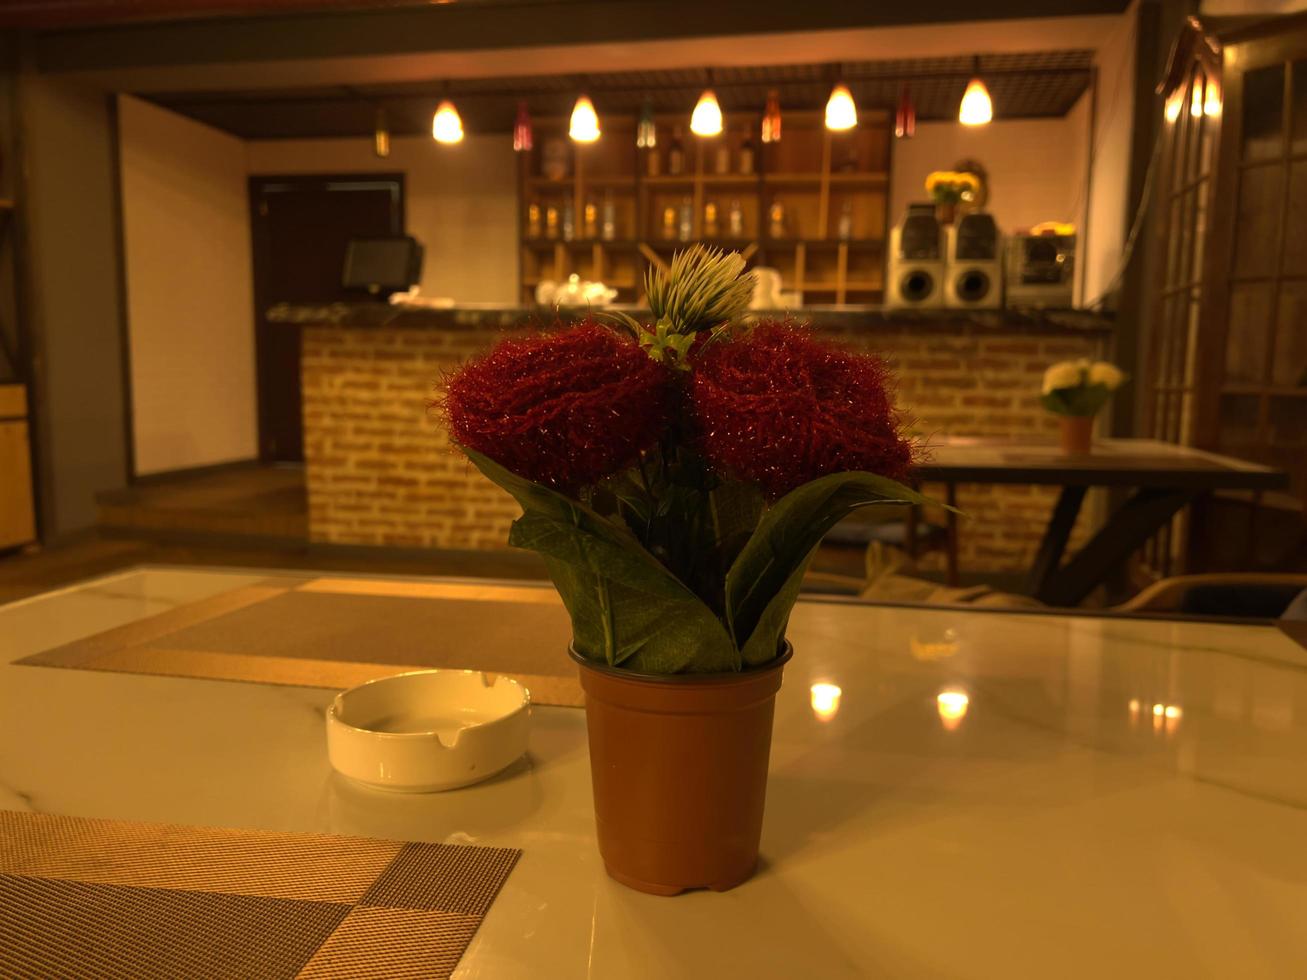 café table dans une restaurant avec rouge fleurs dans une vase photo